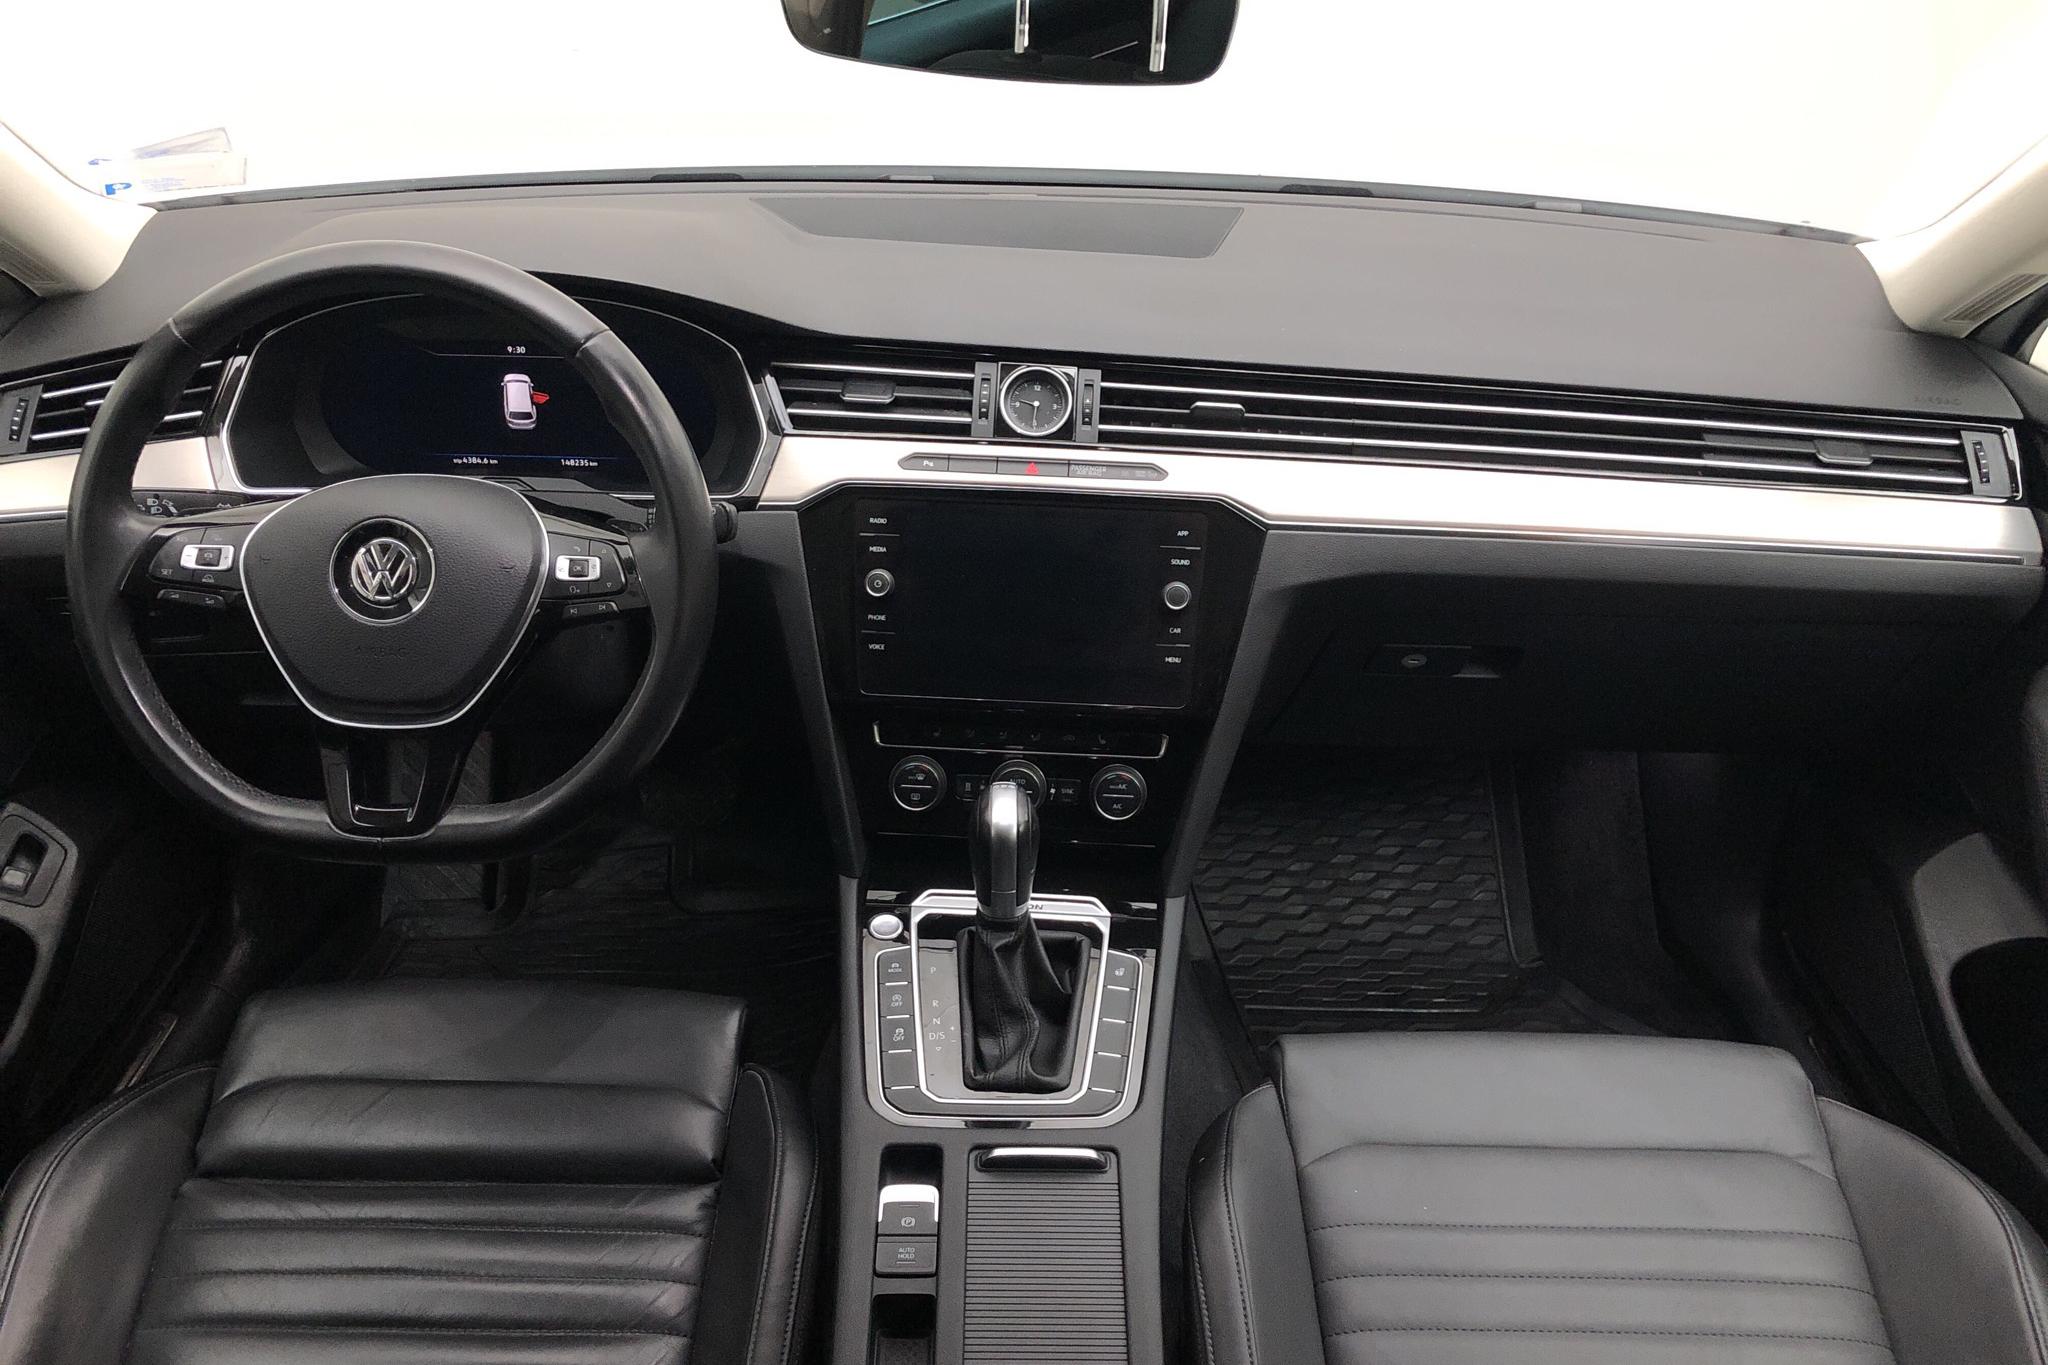 VW Passat 2.0 TDI Sportscombi 4MOTION (190hk) - 14 825 mil - Automat - vit - 2018